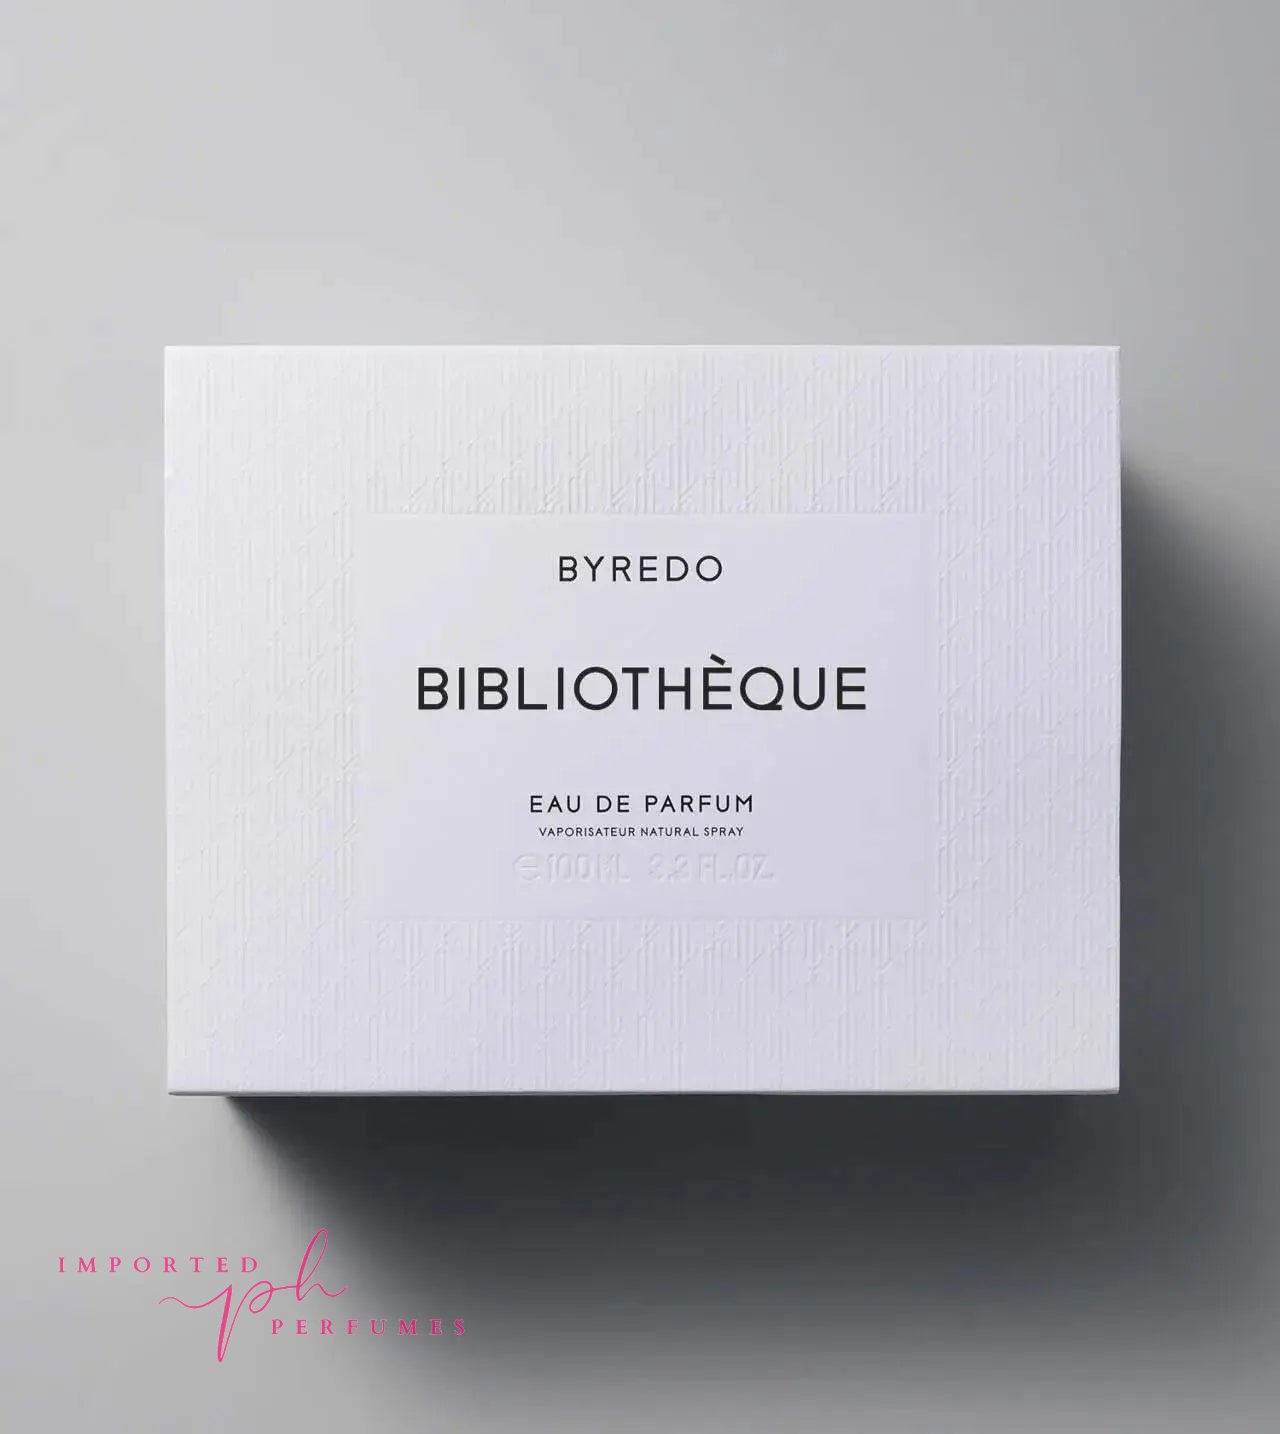 [TESTER] Byredo Bibliothèque Eau De Parfum For Unisex 100ml Imported Perfumes Co